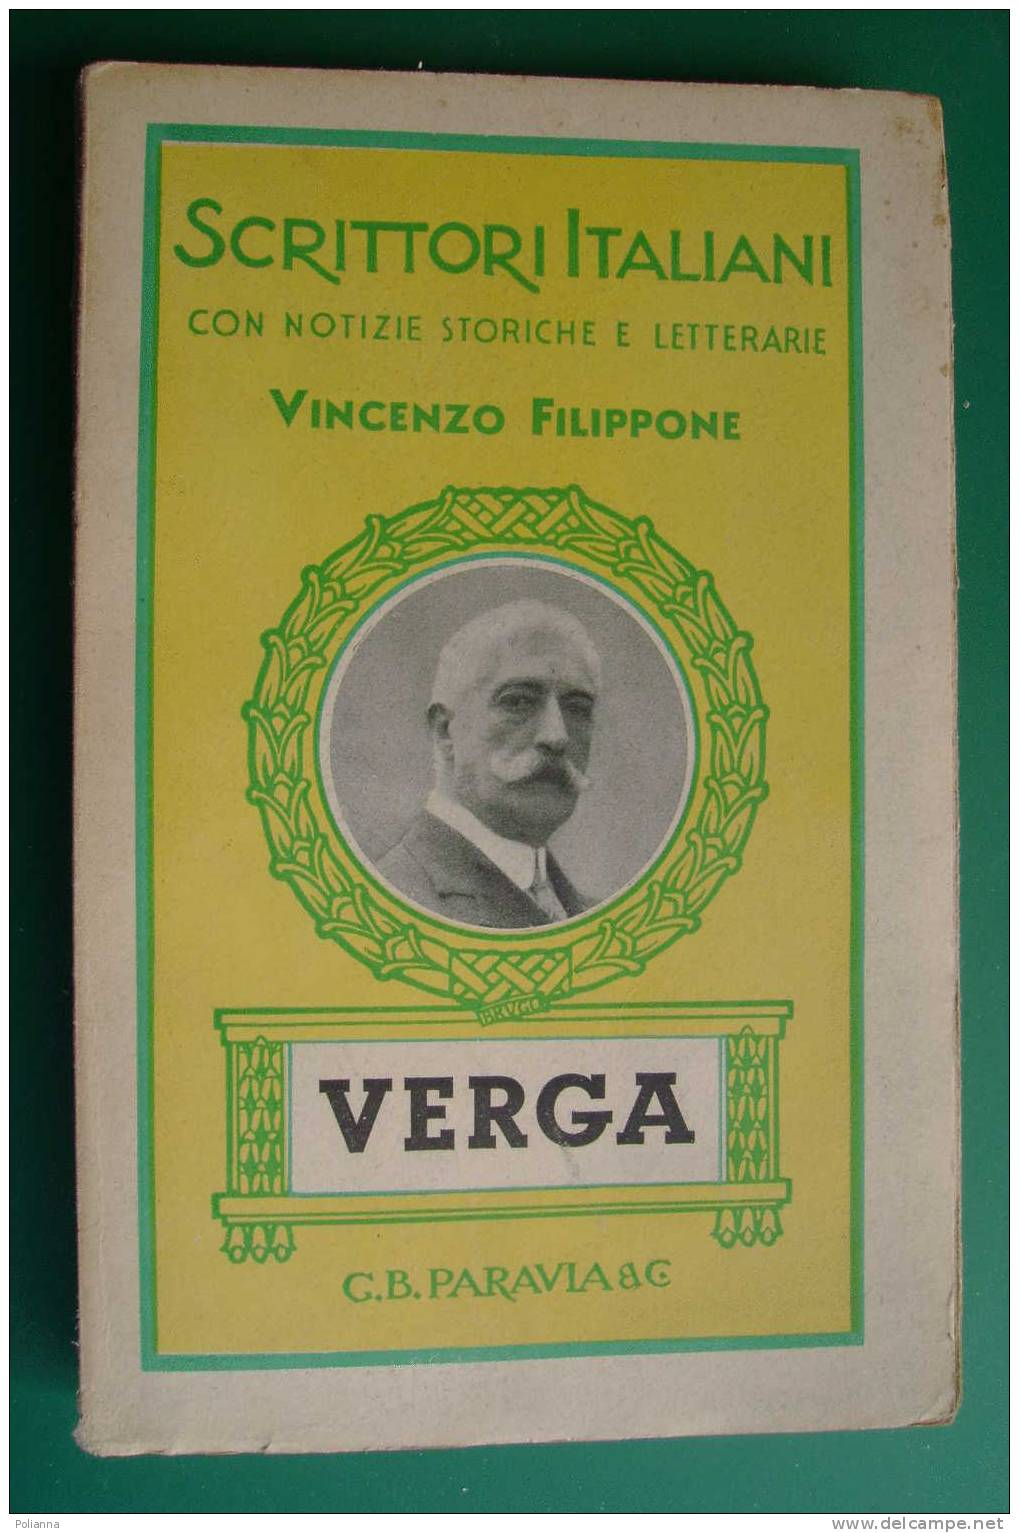 PDD/35 Scrittori Italiani - Vincenzo Filippone - VERGA  Paravia 1942 - Oud